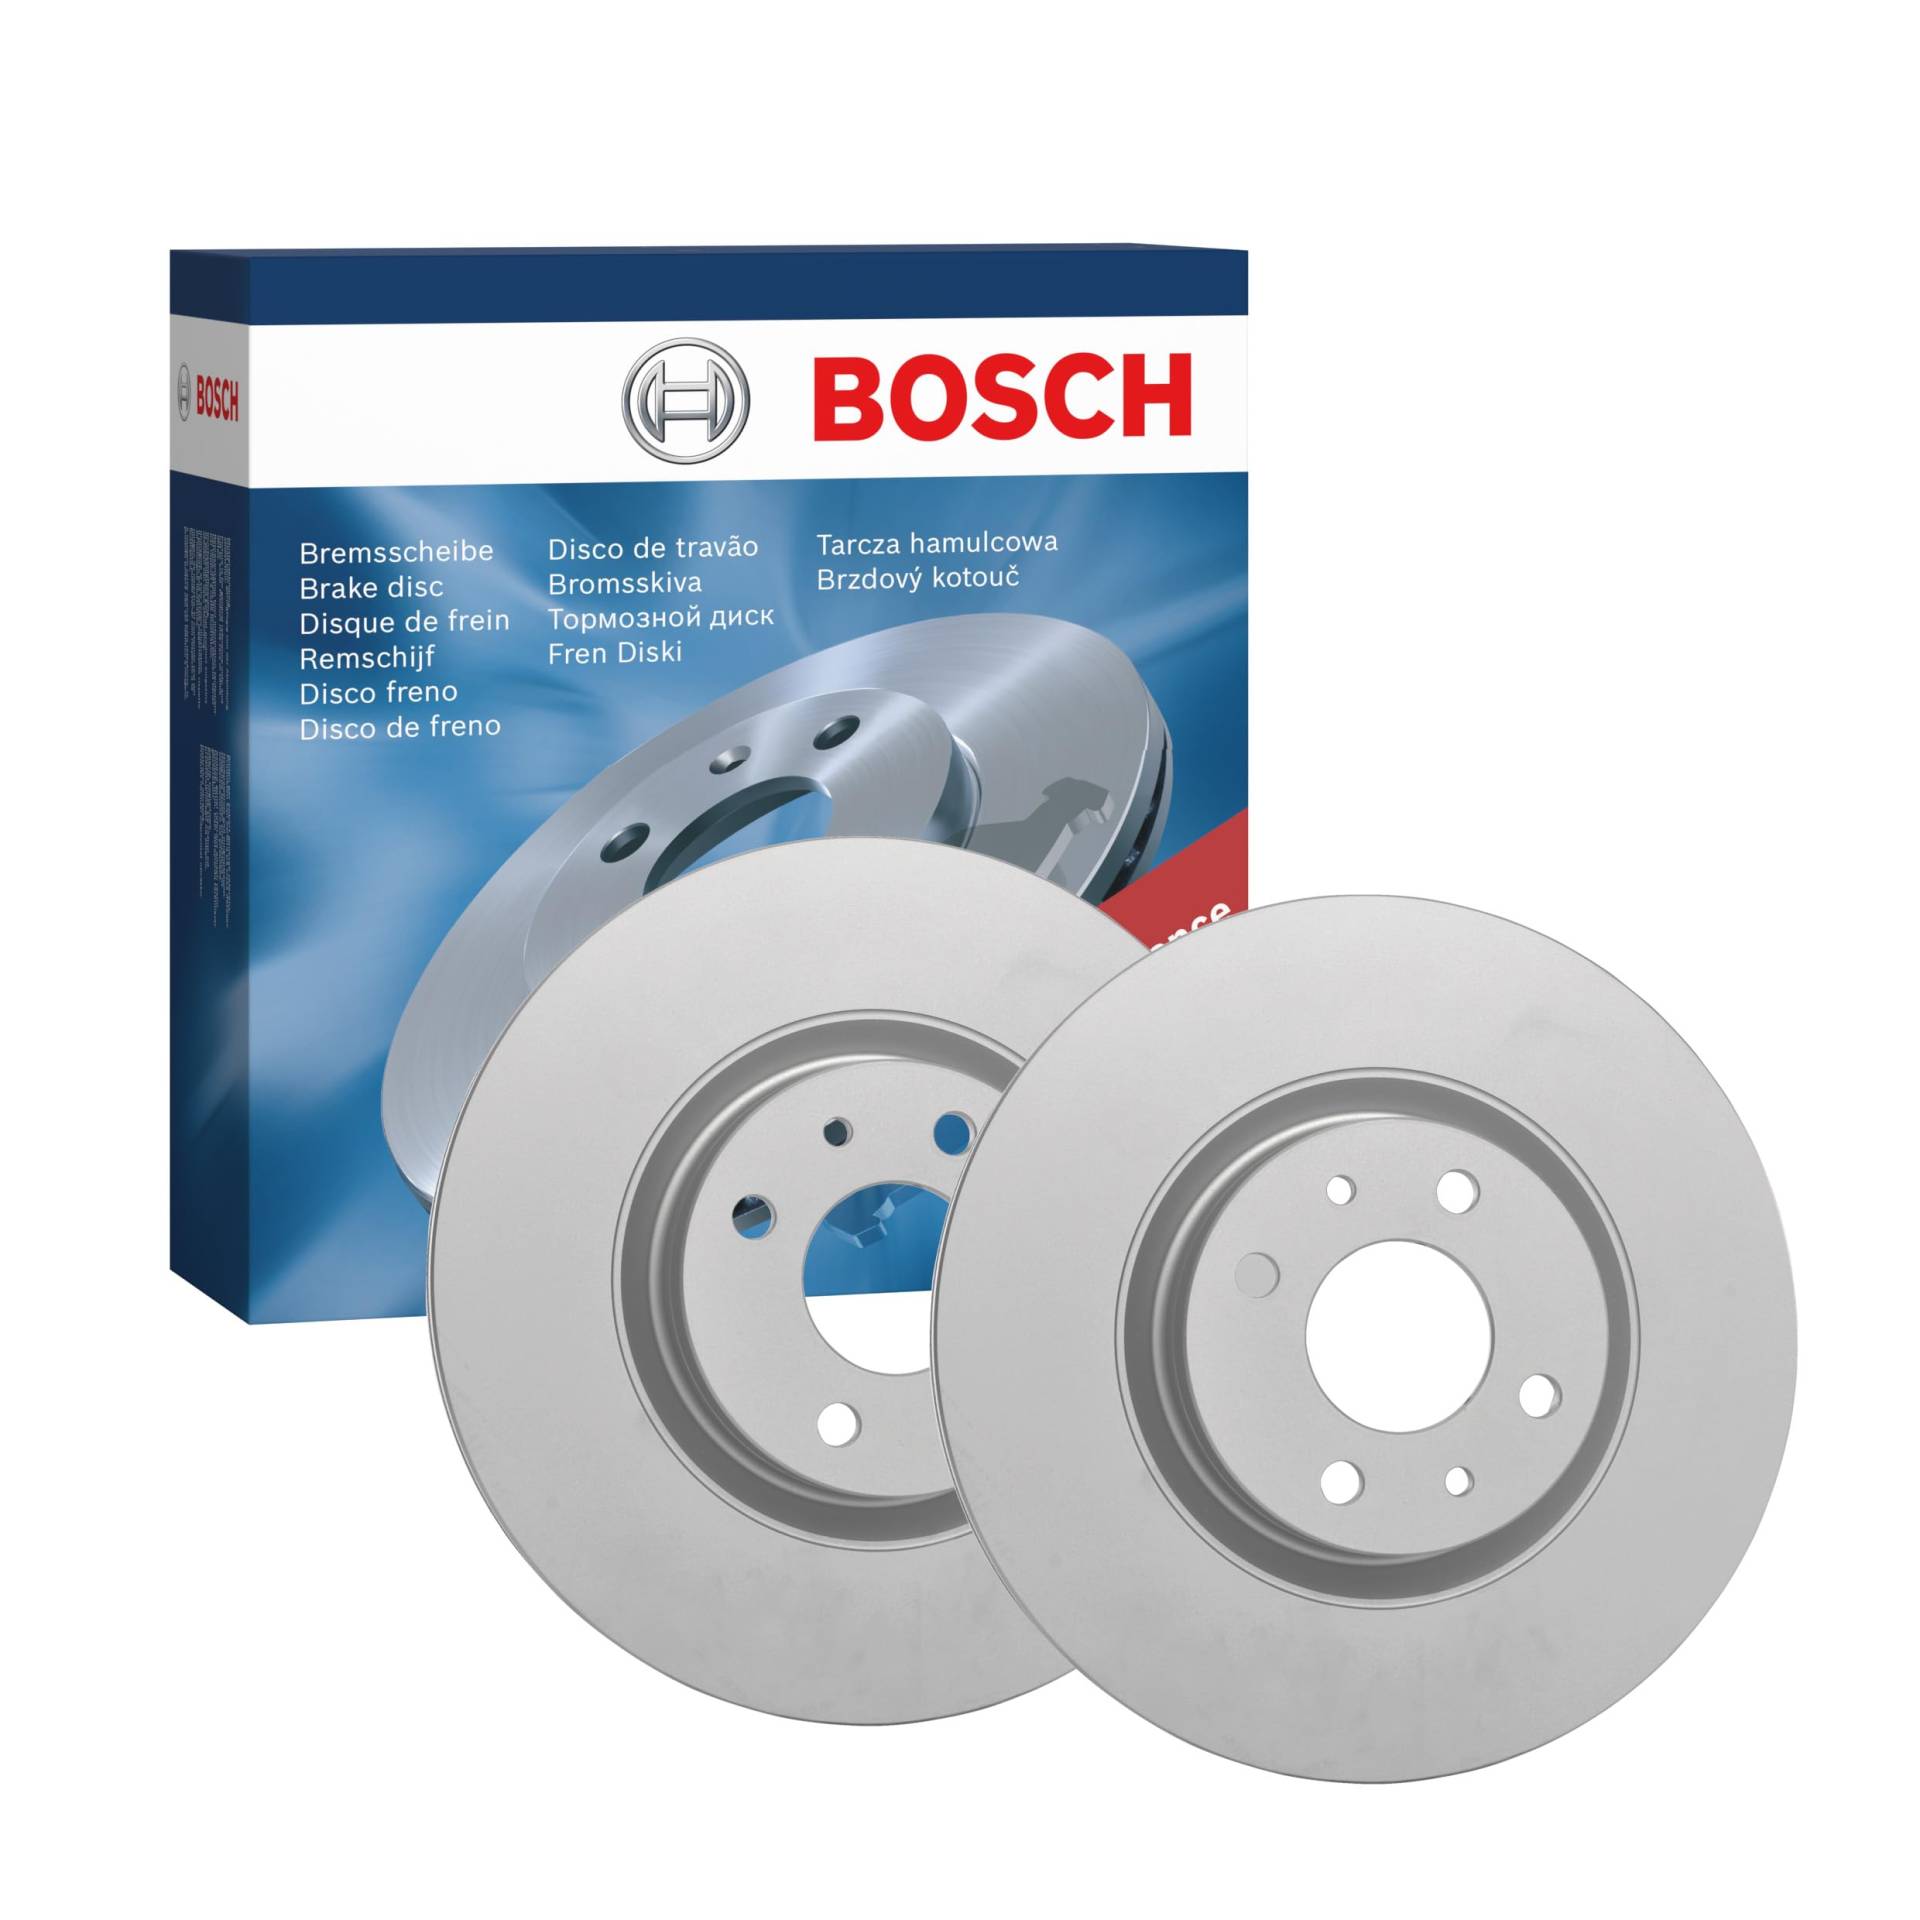 Bosch BD2050 Bremsscheiben - Vorderachse - ECE-R90 Zertifizierung - zwei Bremsscheiben pro Set von Bosch Automotive